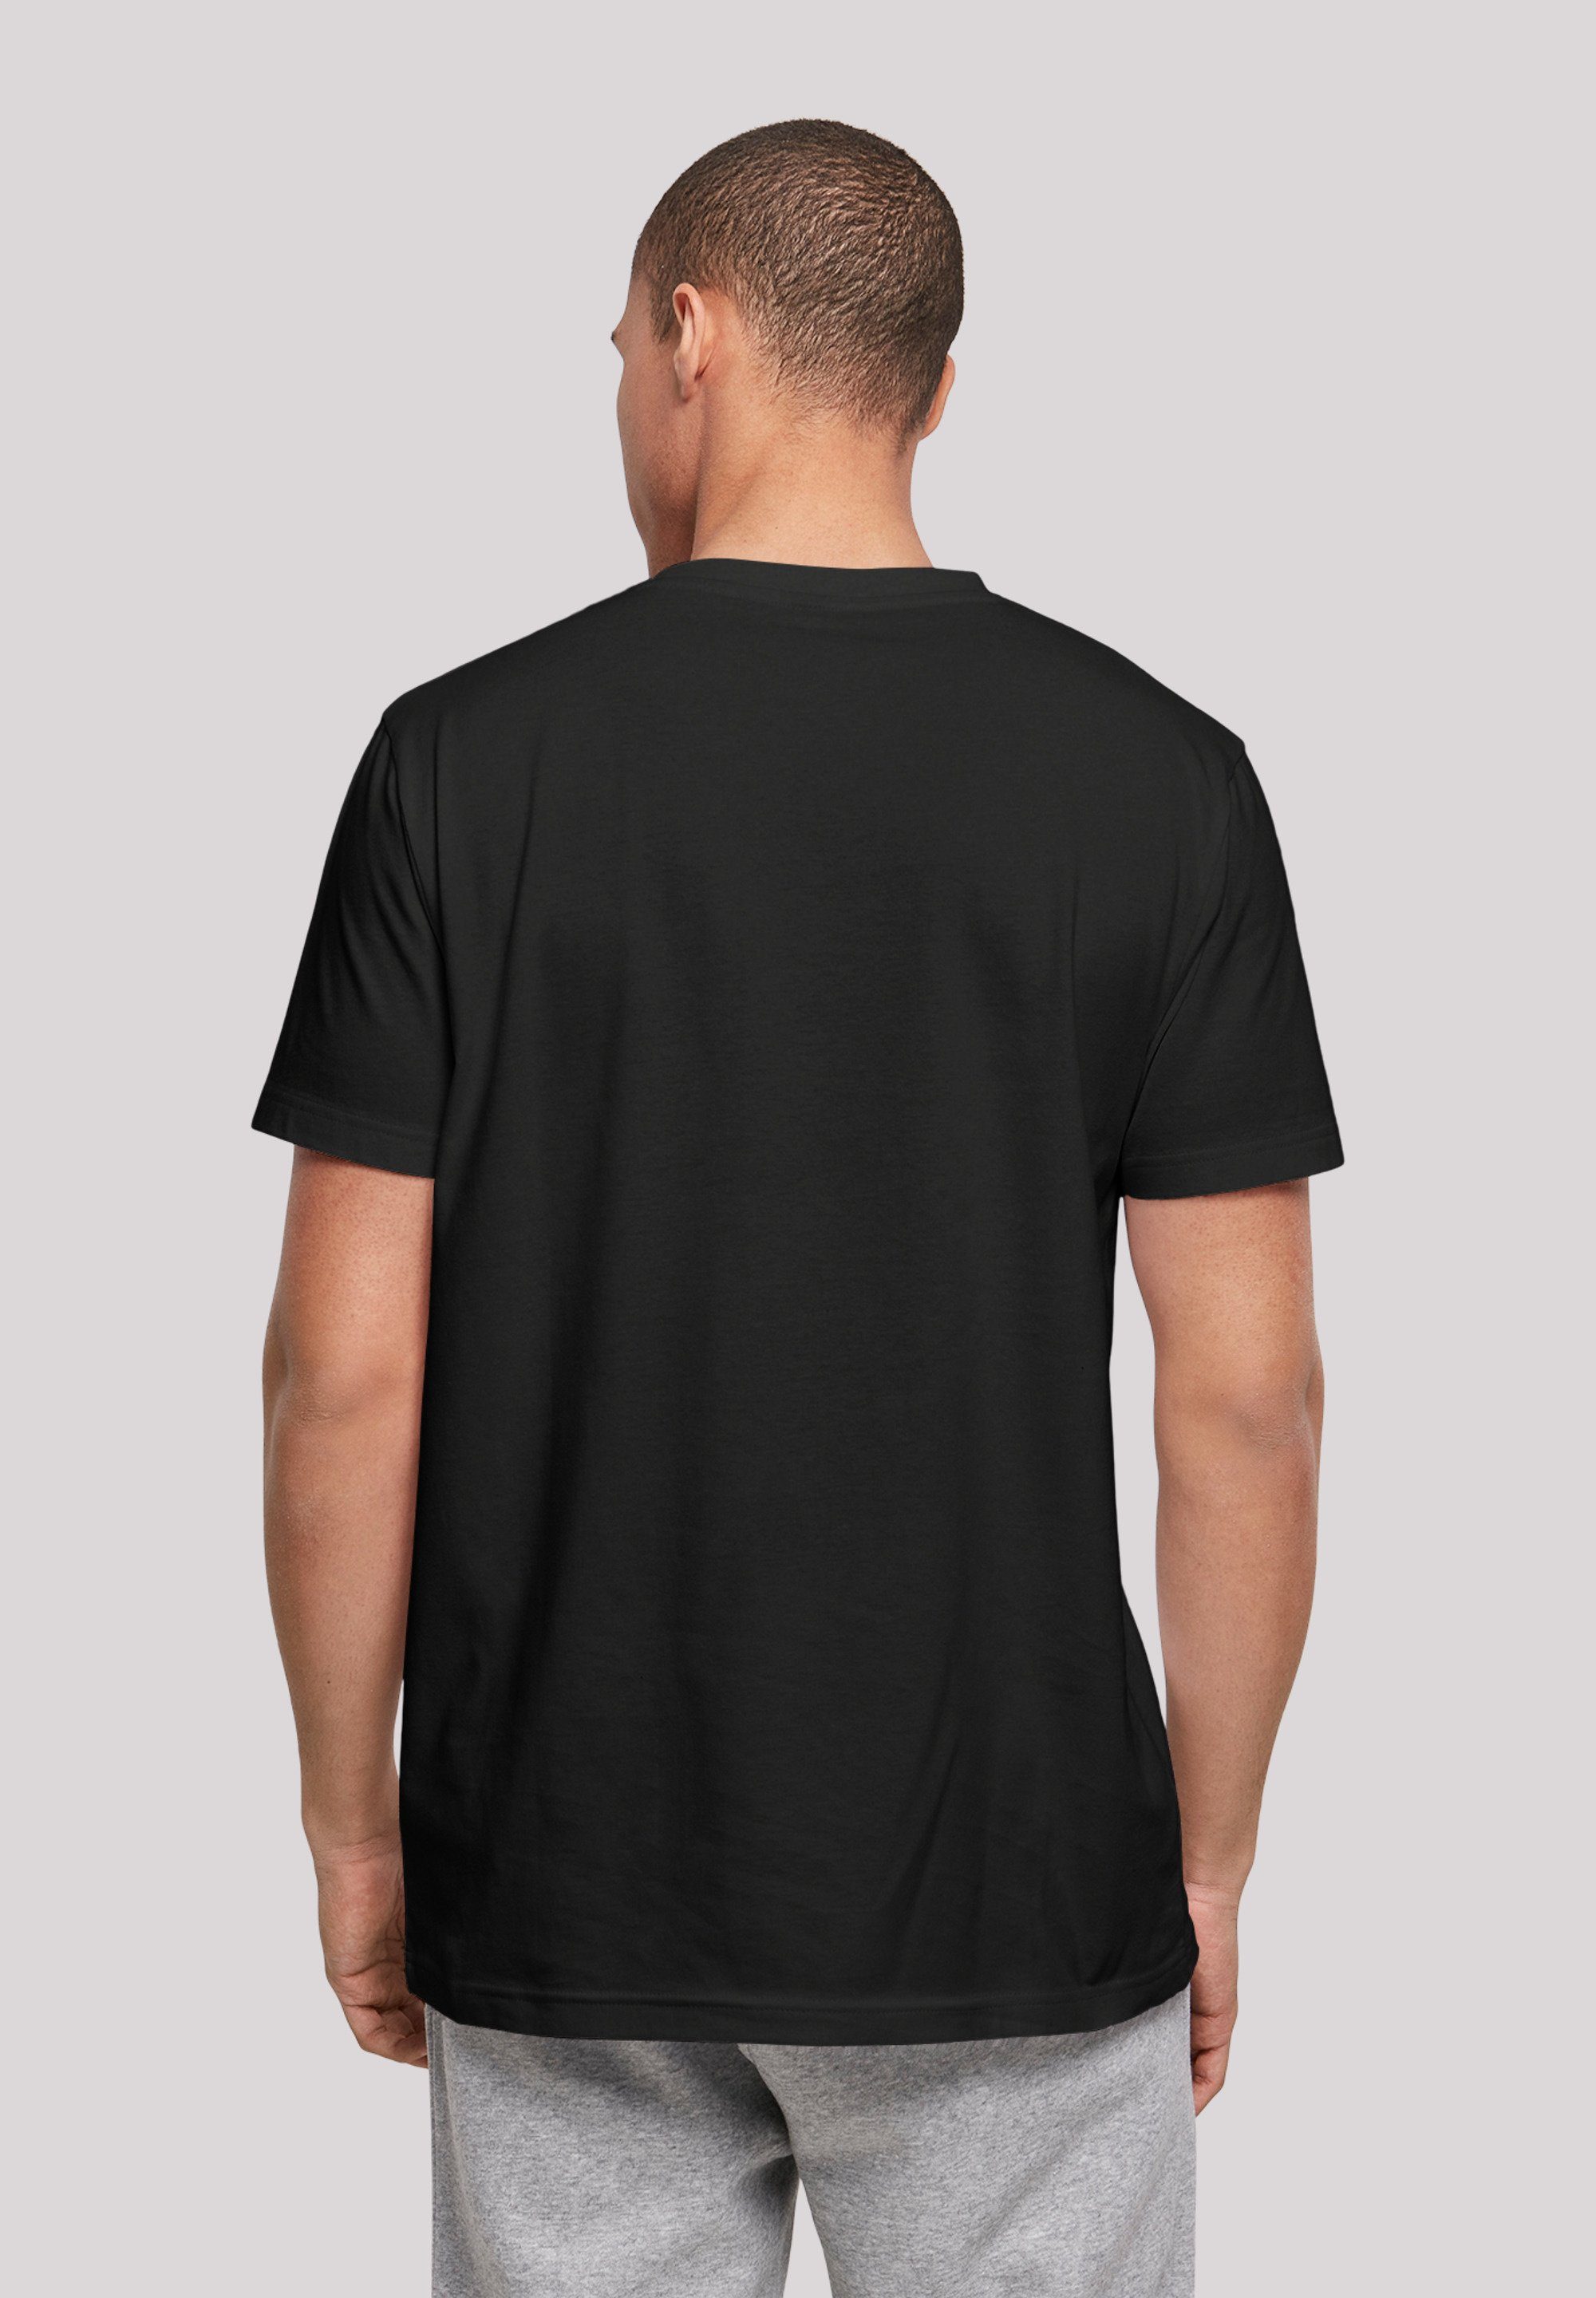 Print F4NT4STIC Spieler T-Shirt schwarz Basketball